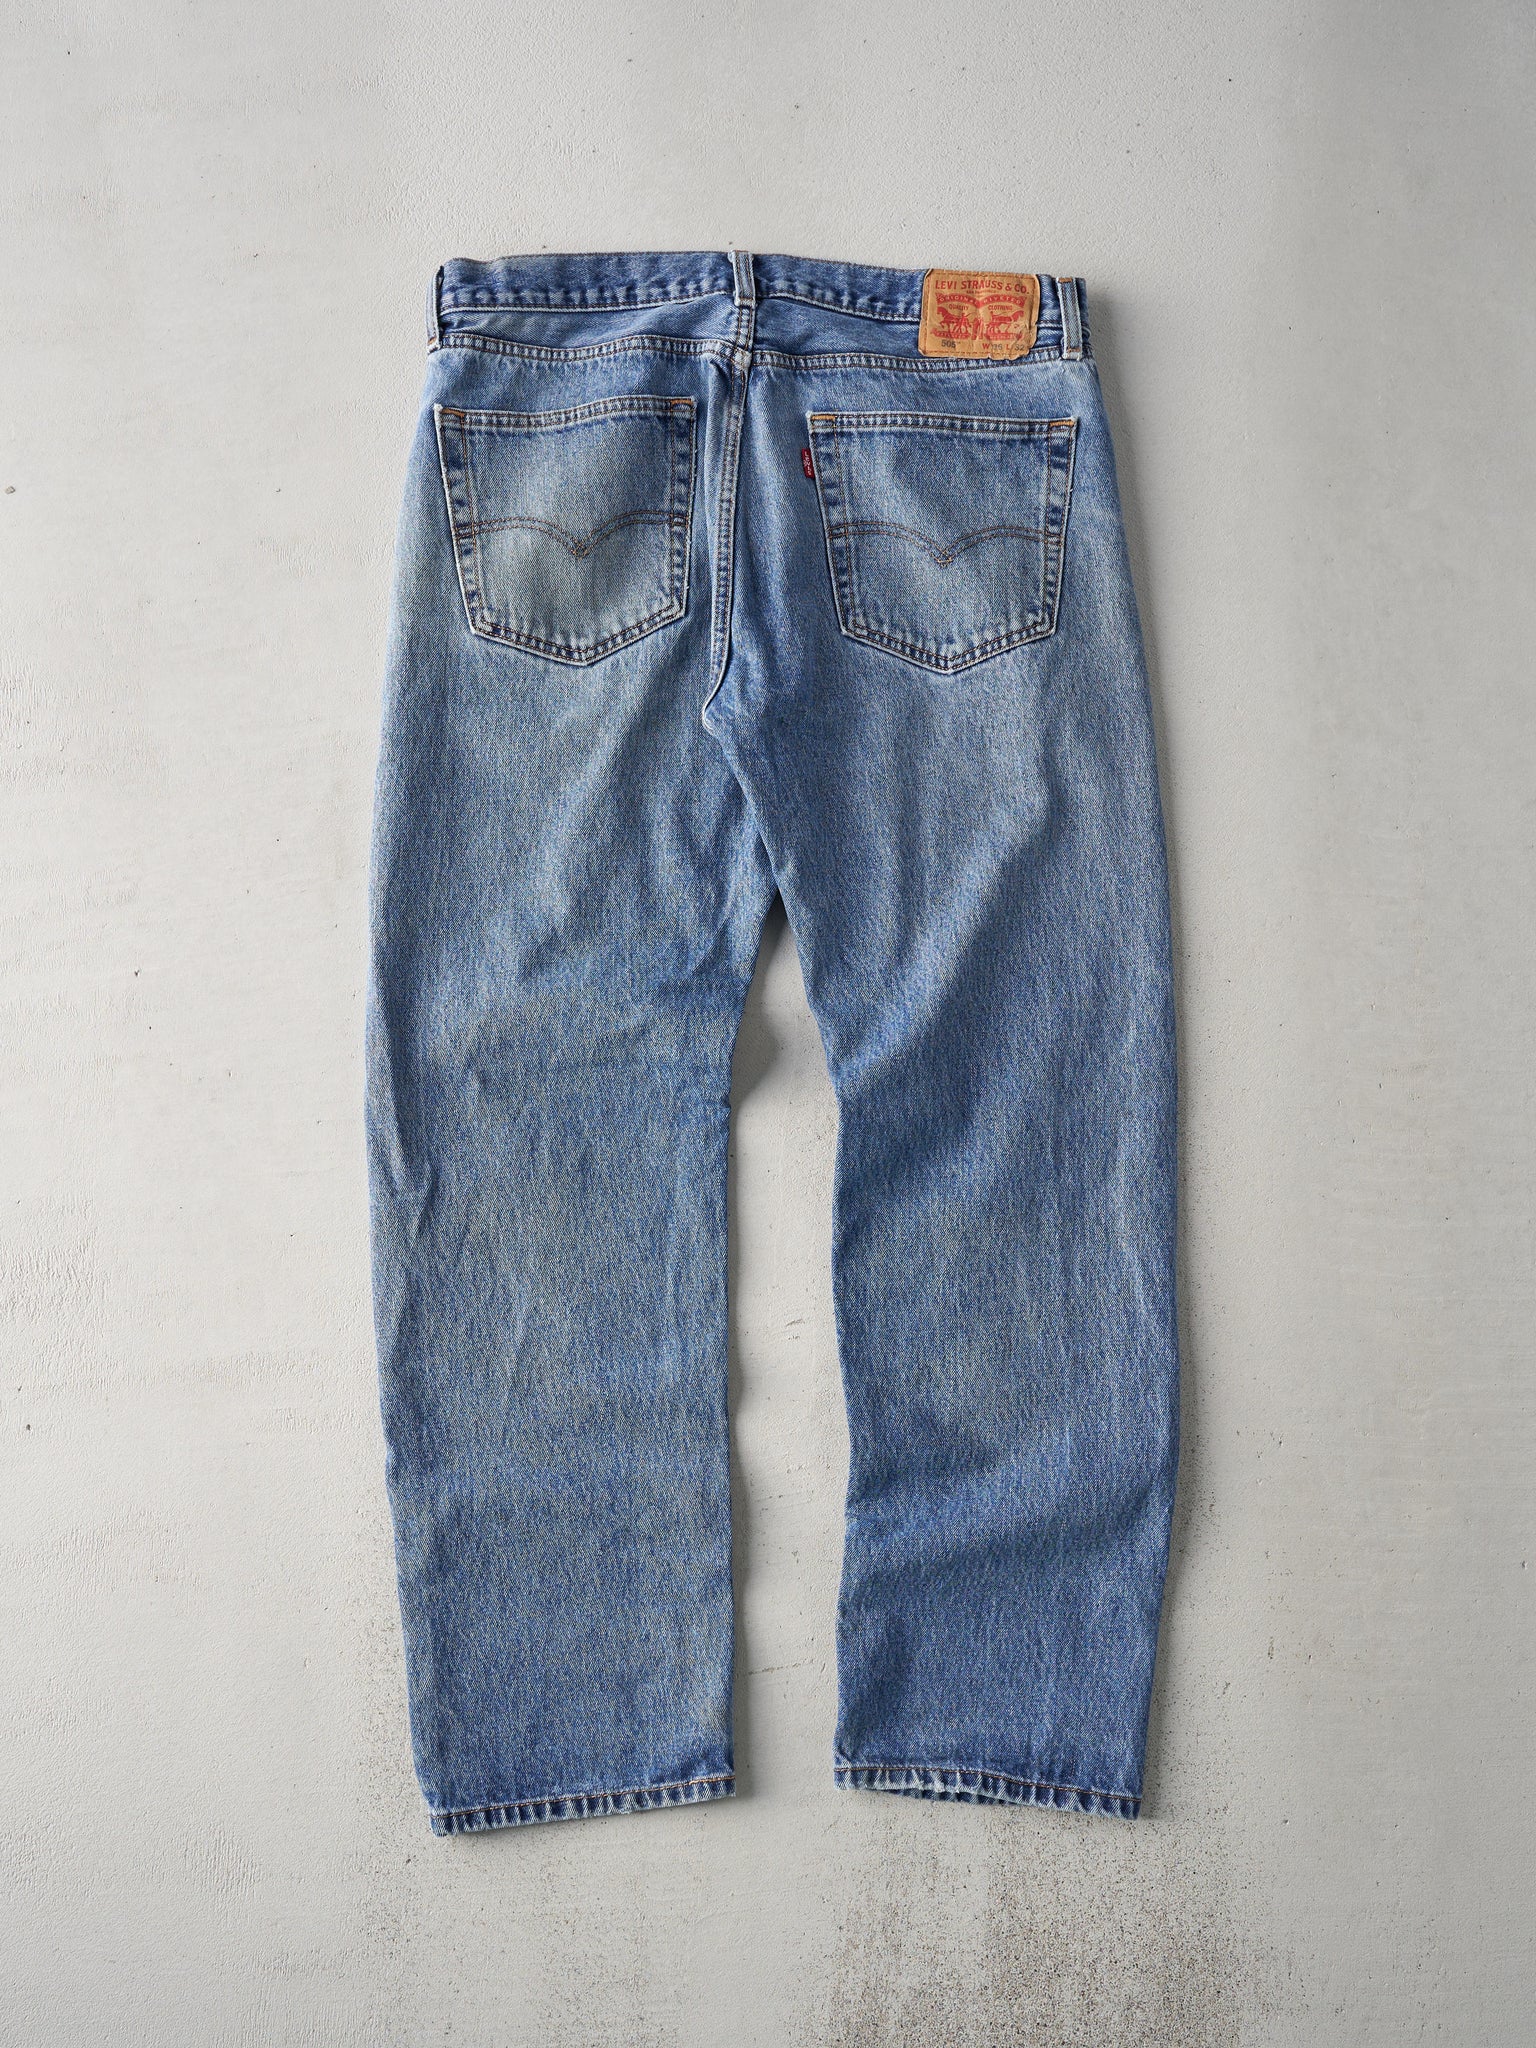 Vintage Y2k Light Wash Levis 505 Denim Jeans (36x30.5)